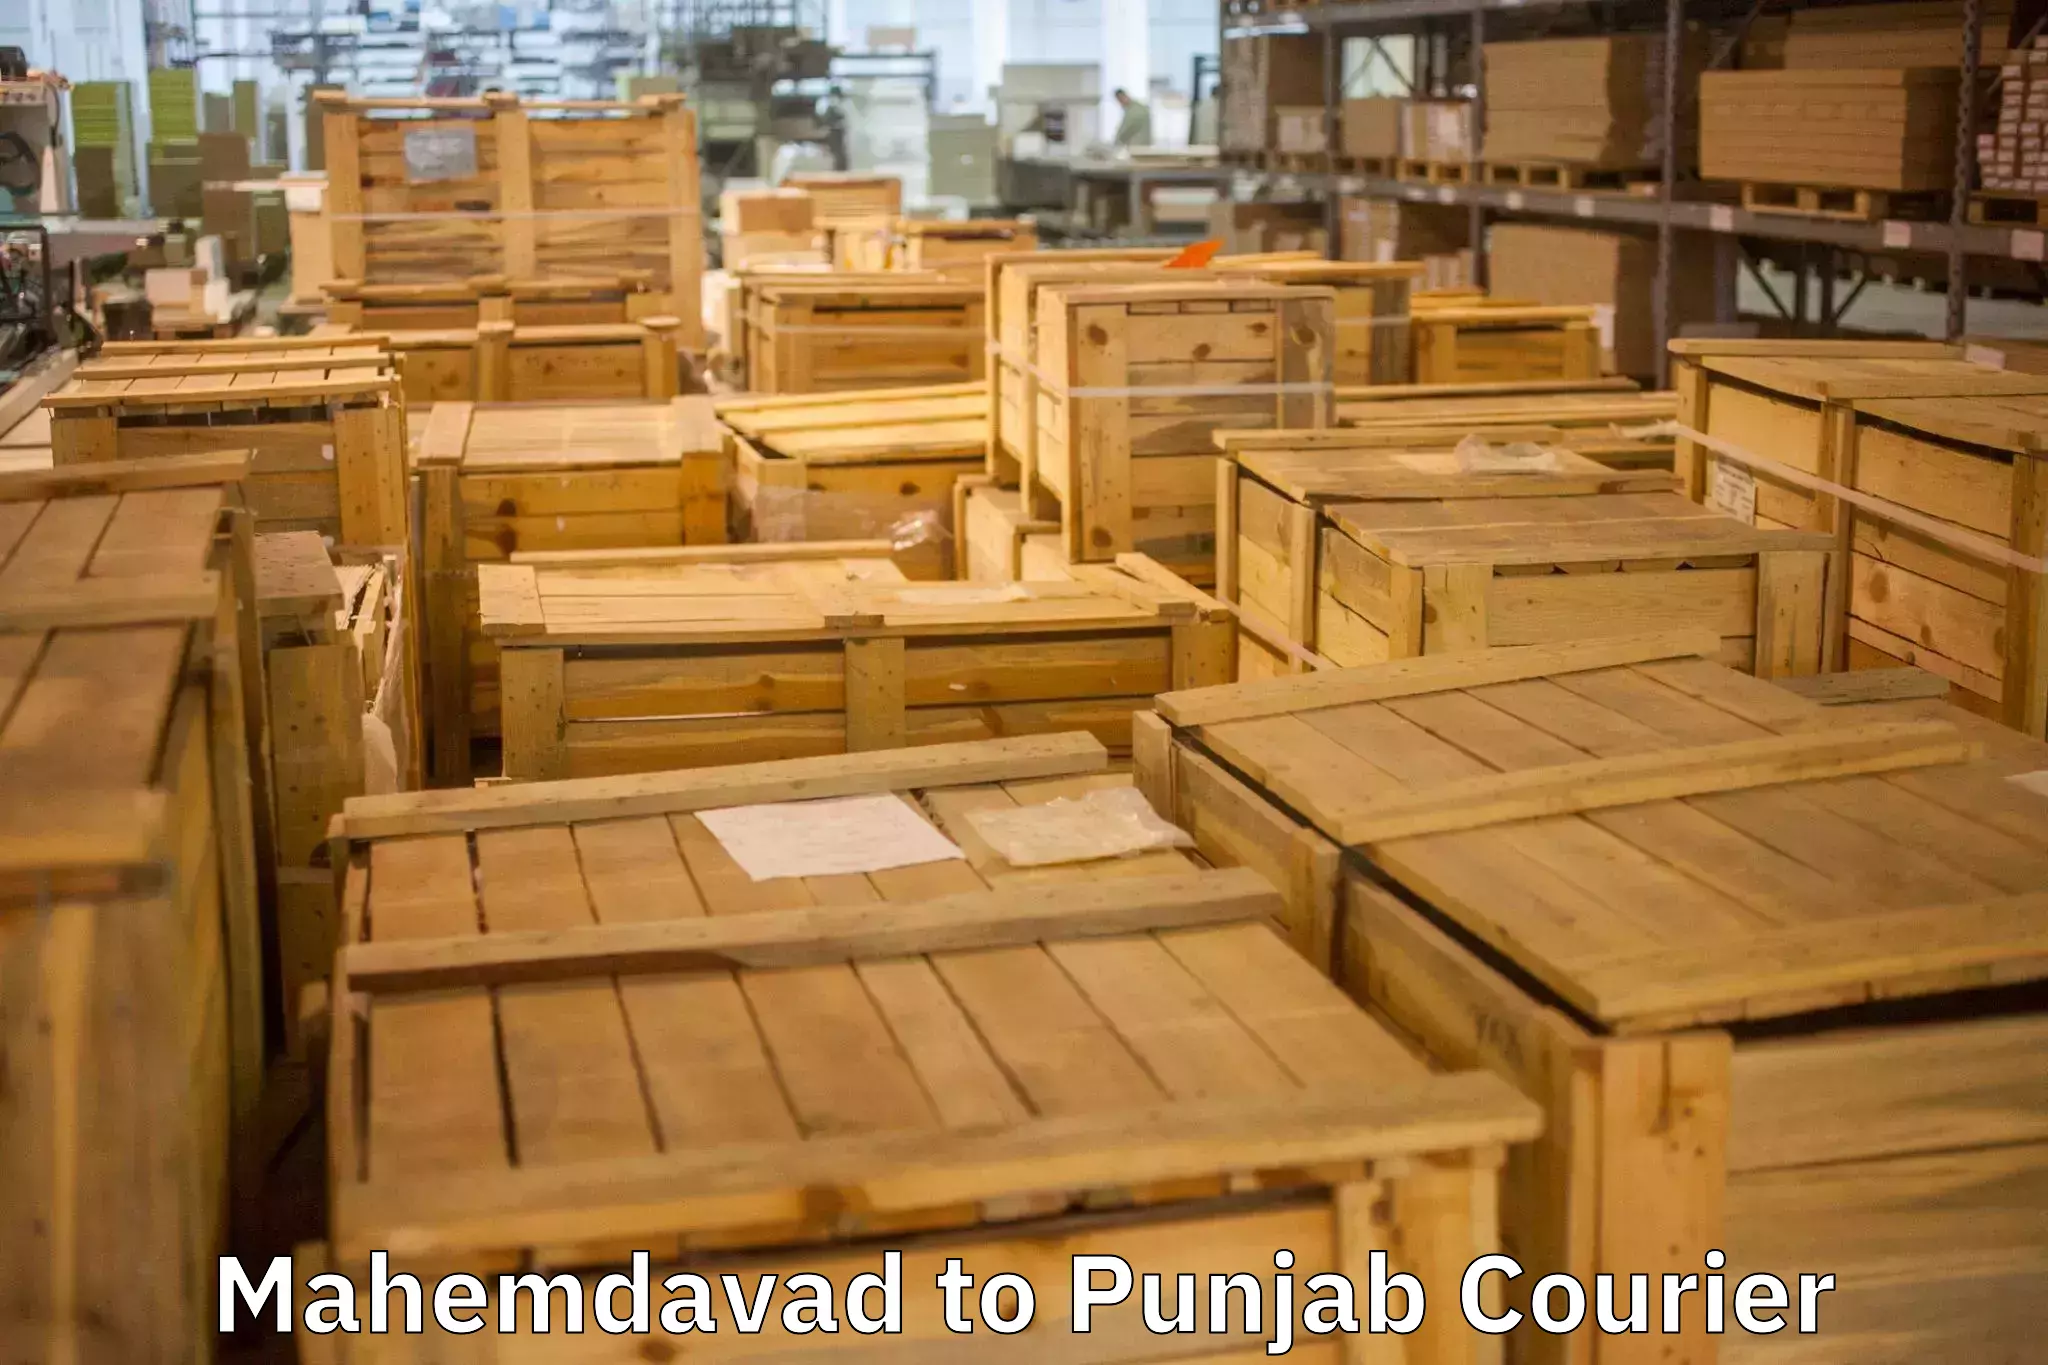 Furniture moving experts Mahemdavad to Zira